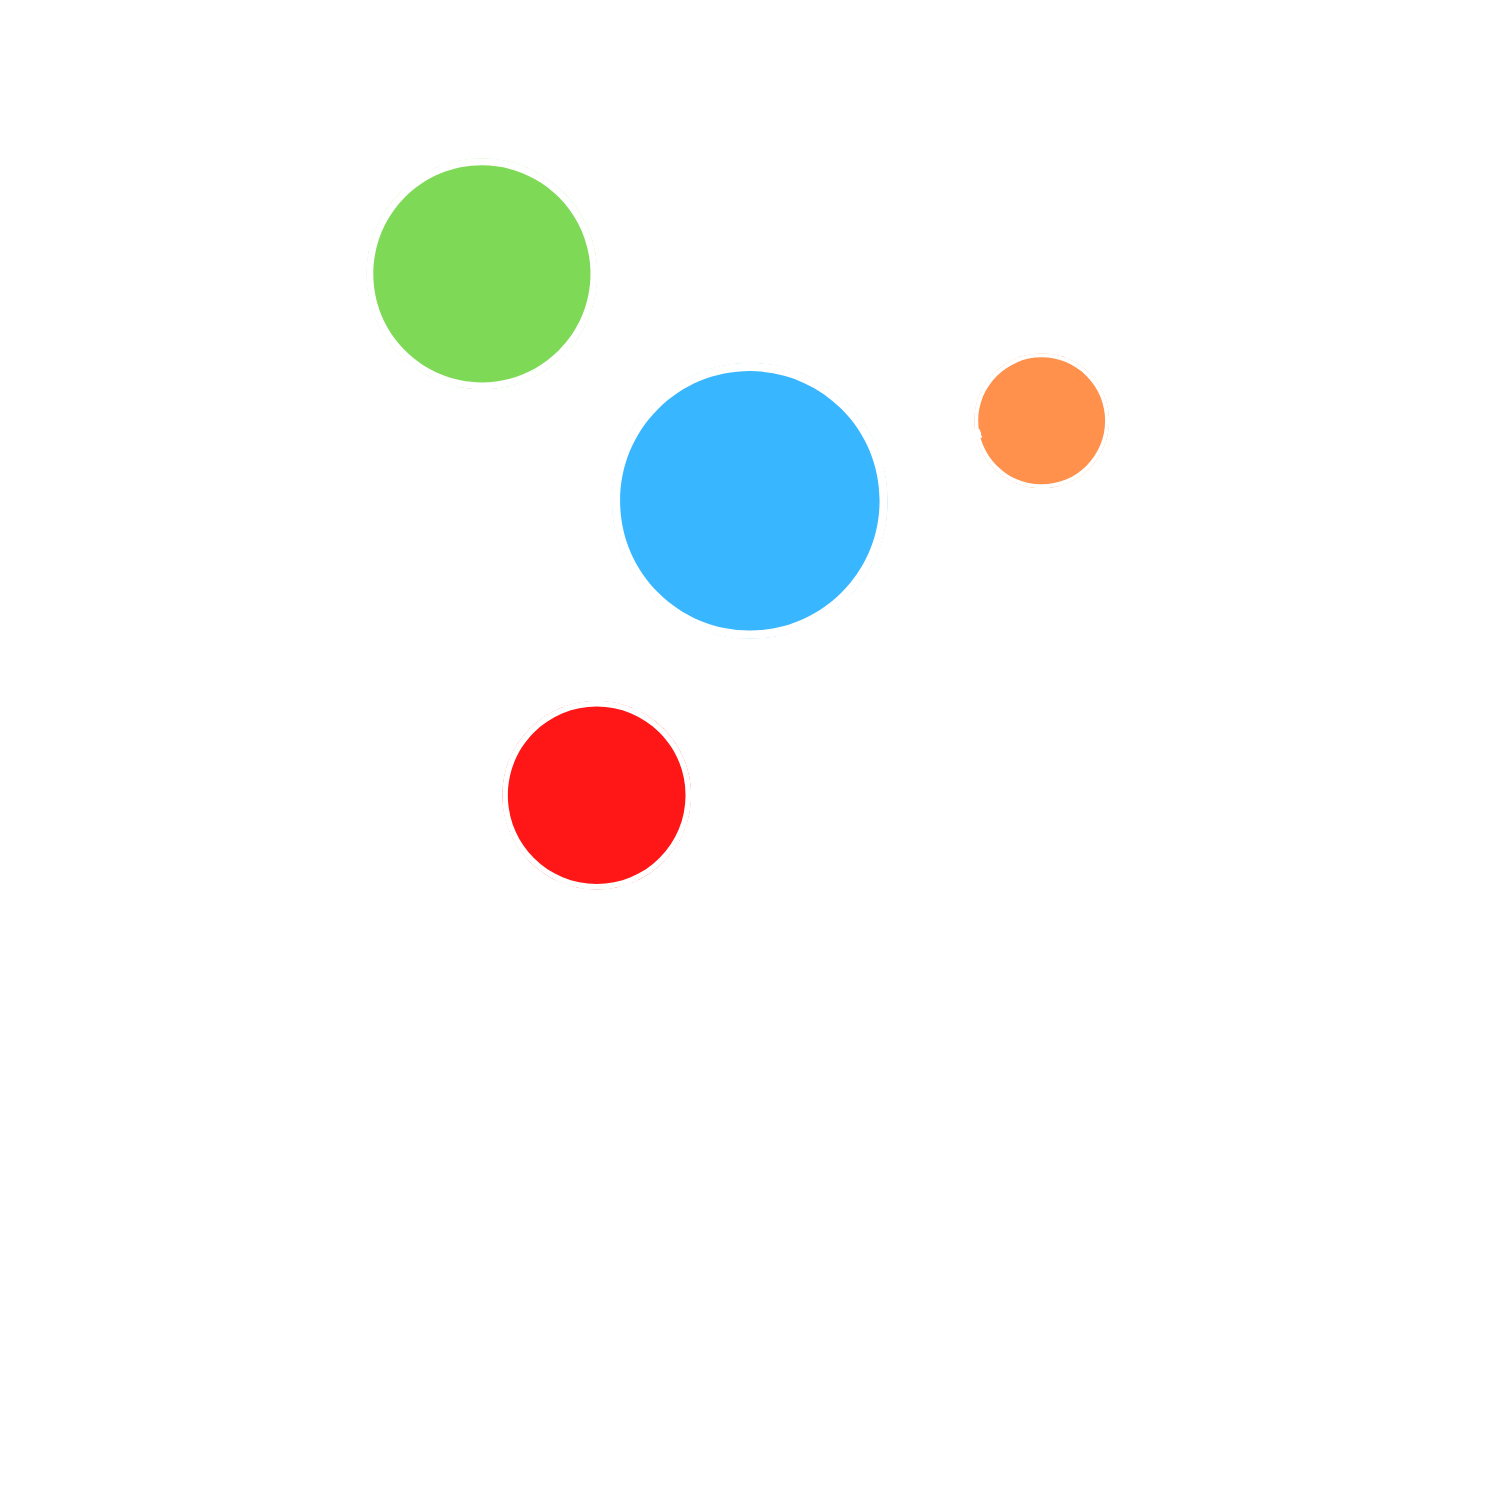 Quikoop Network Technologies